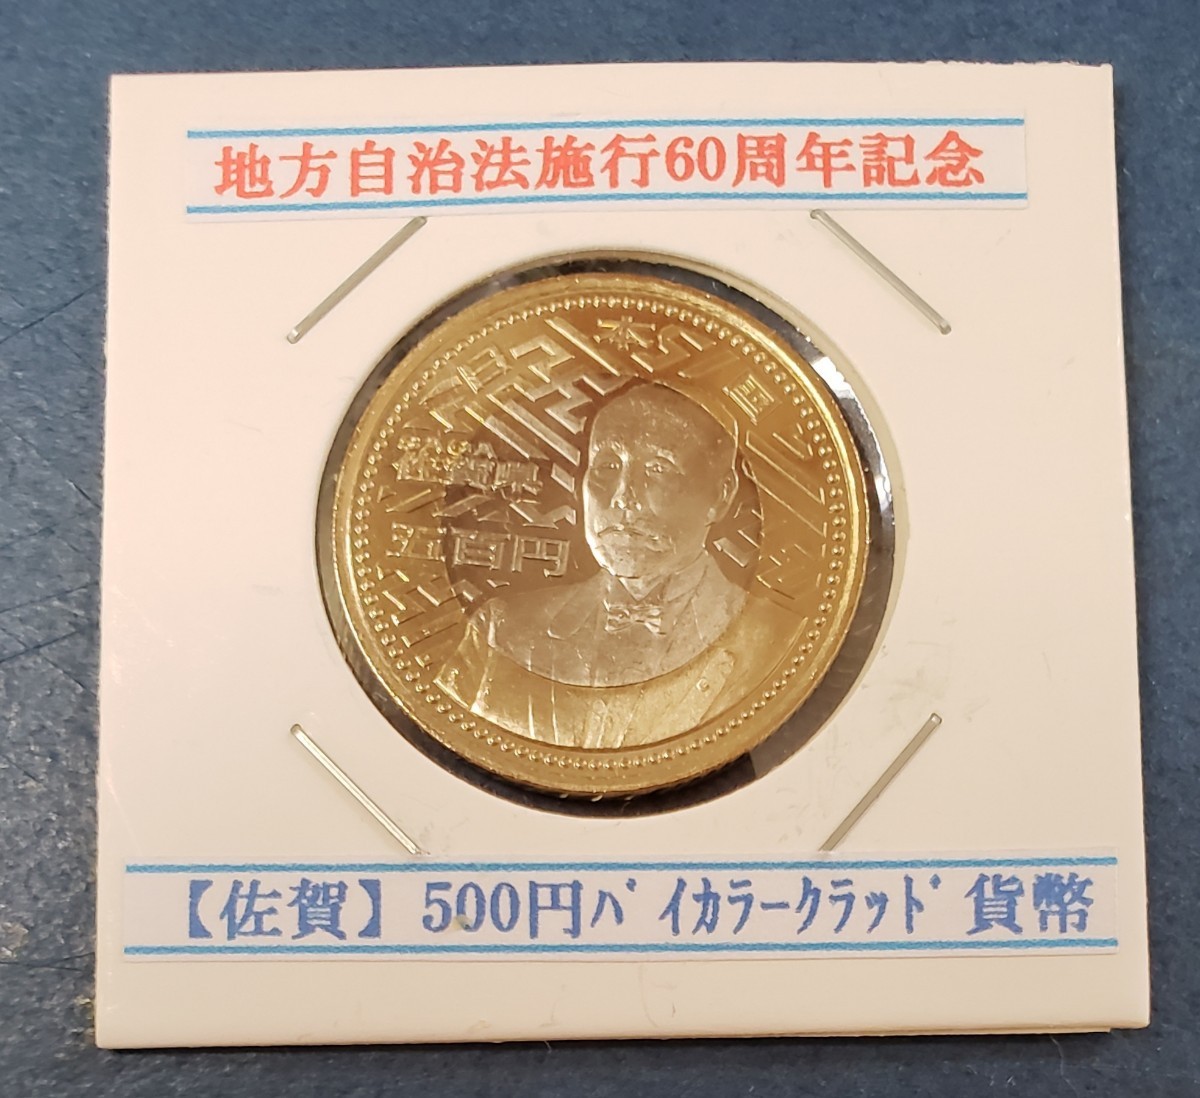 地方自治法施行60周年記念 佐賀県      500円バイカラークラッド貨幣 控え記号:J53の画像1